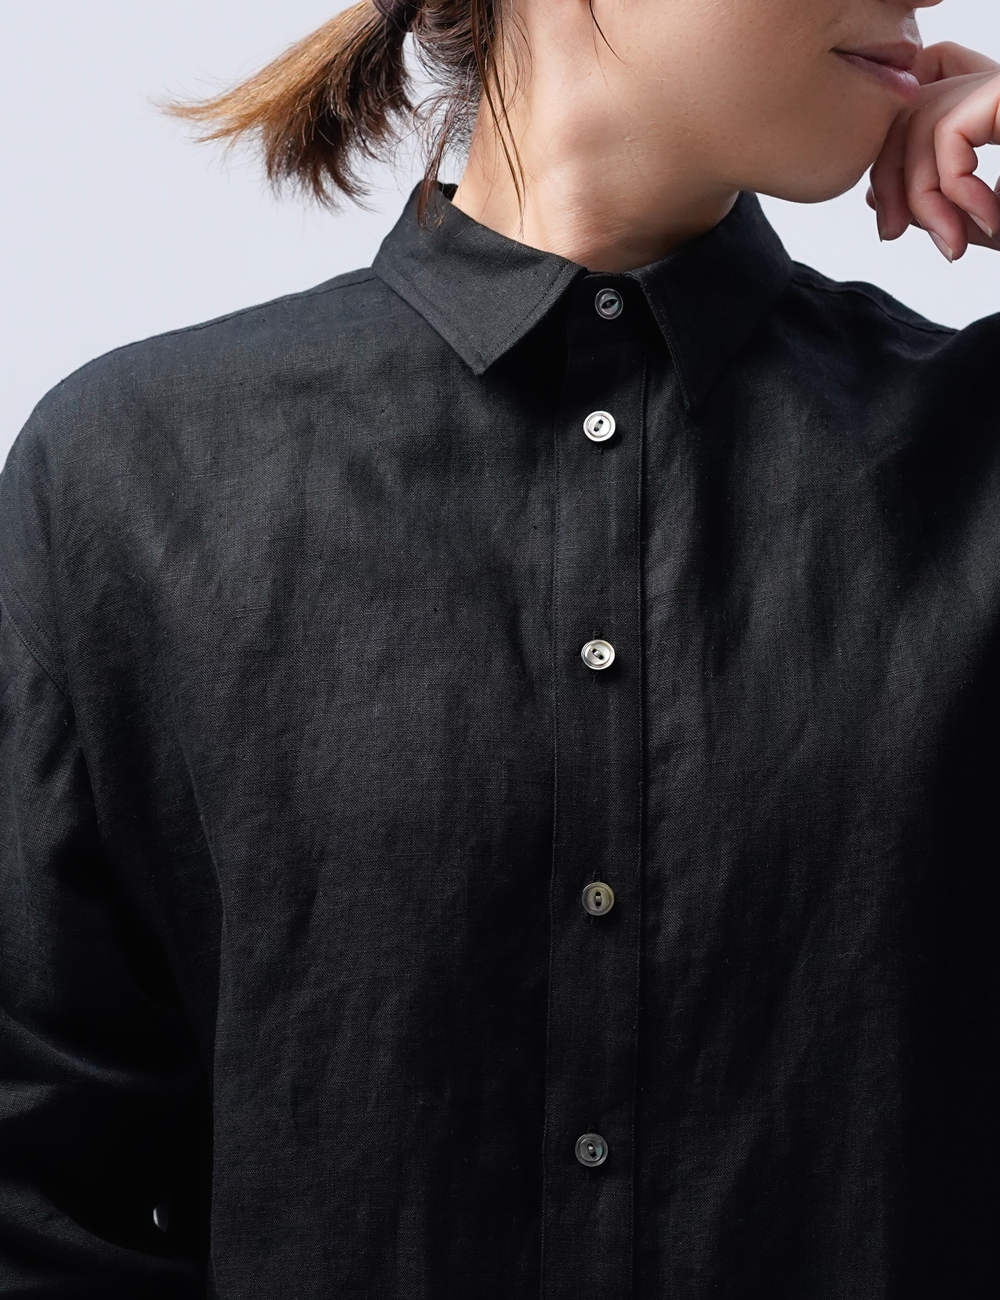 【wafu】ゆるっと感が絶妙にカッコい男女兼用シャツ/ 黒色 t021j-bck1